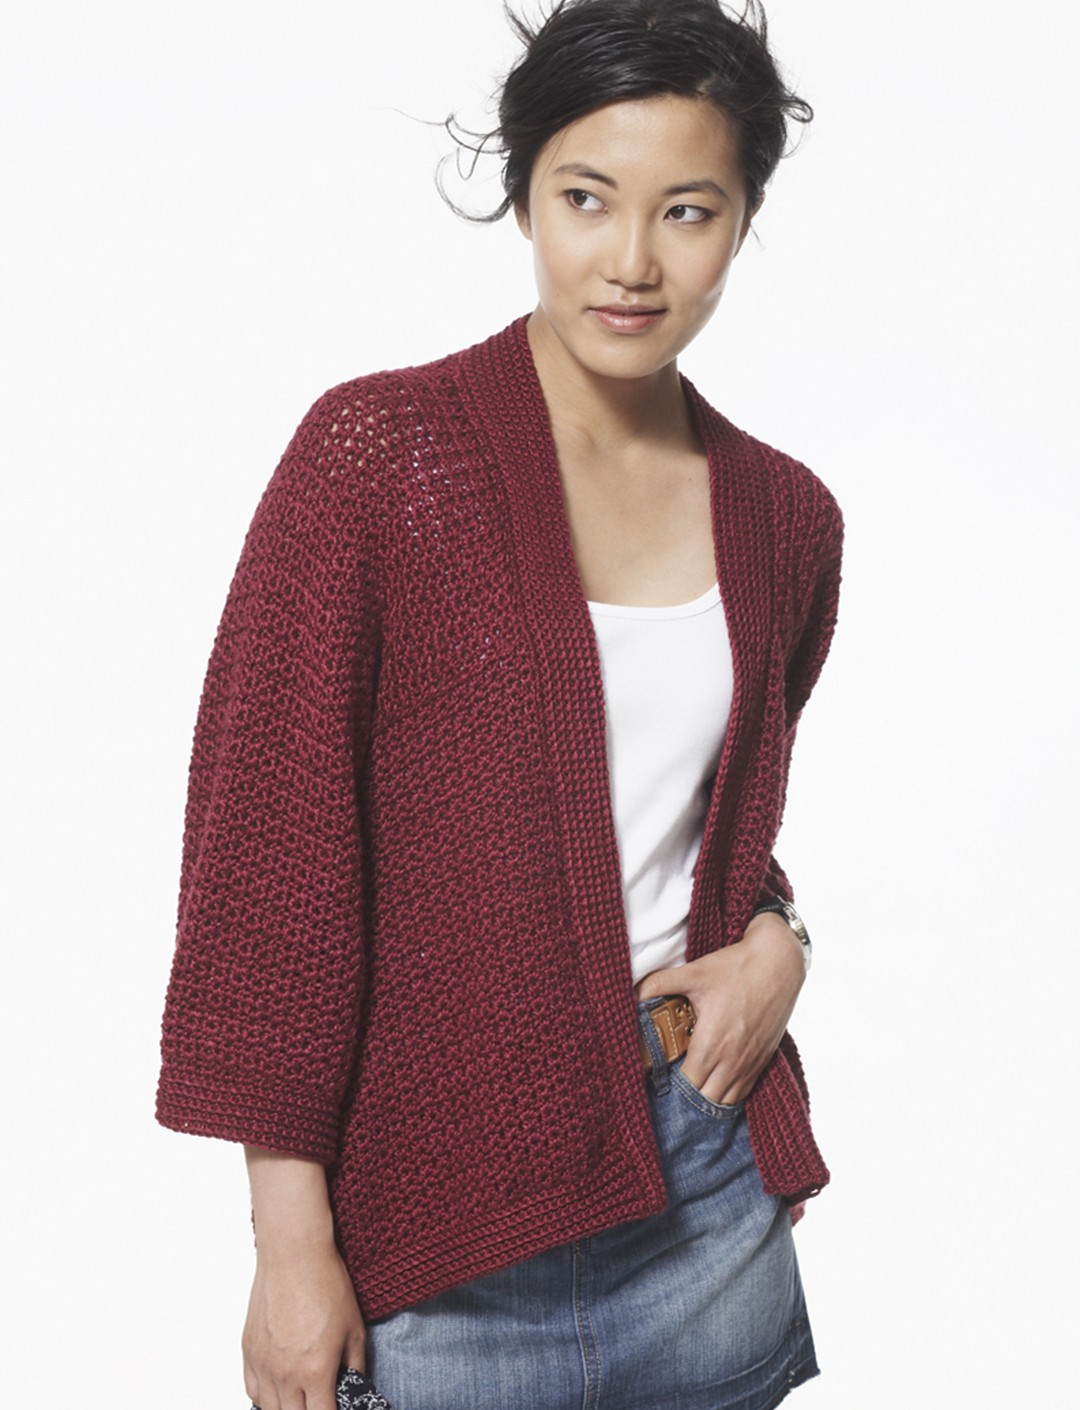 Kimono Sweater Knitting Pattern Crochet Cardigan Soft Drape Kimono Jacket Knqijfi Crochet And